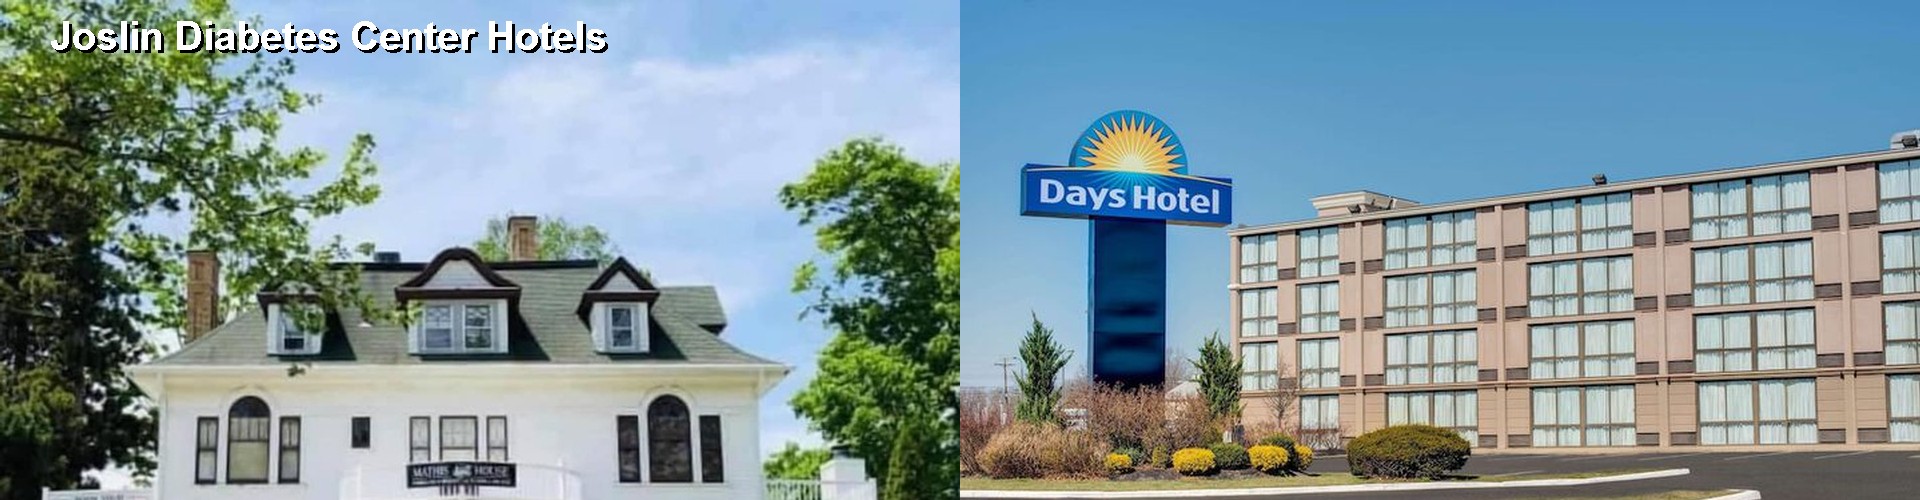 3 Best Hotels near Joslin Diabetes Center